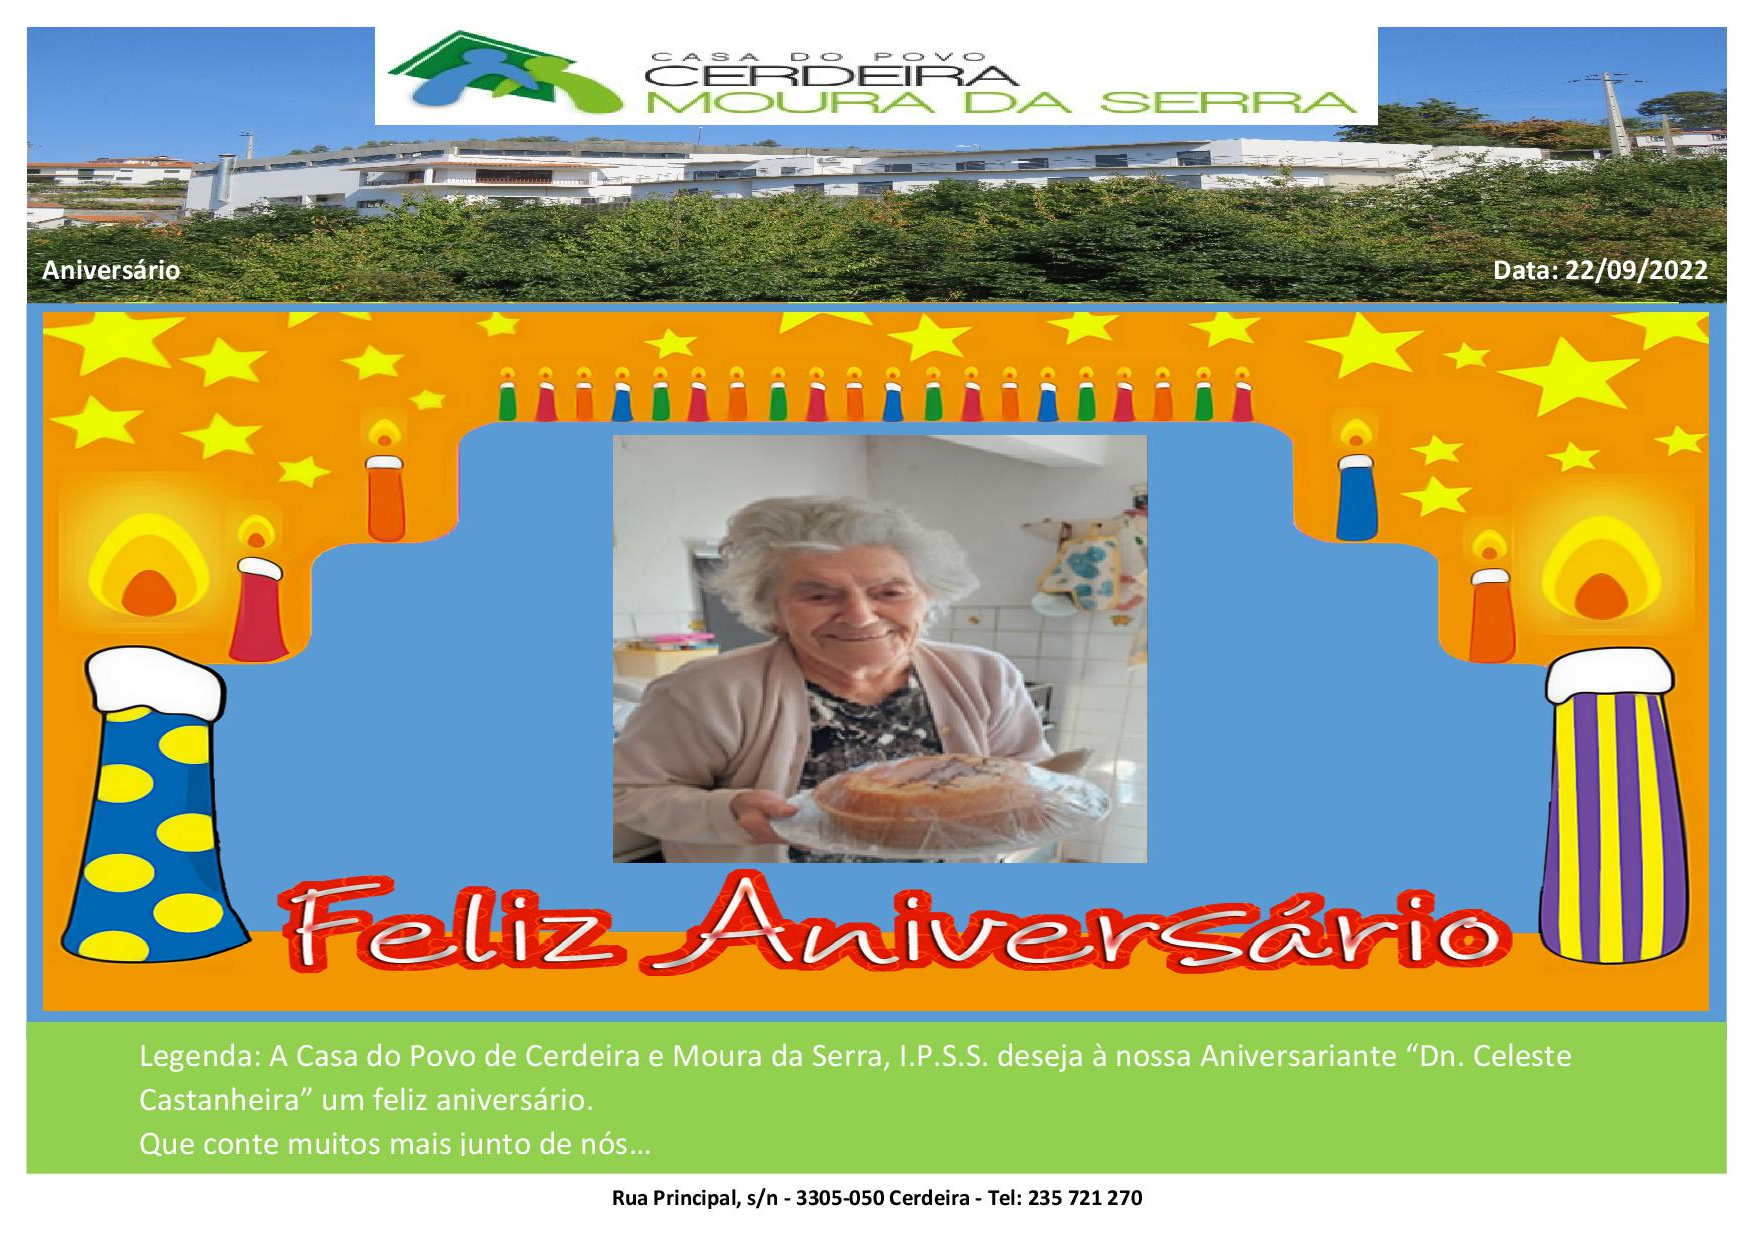 Feliz Aniversário “Dn. Celeste Castanheira” em 22/09/2022